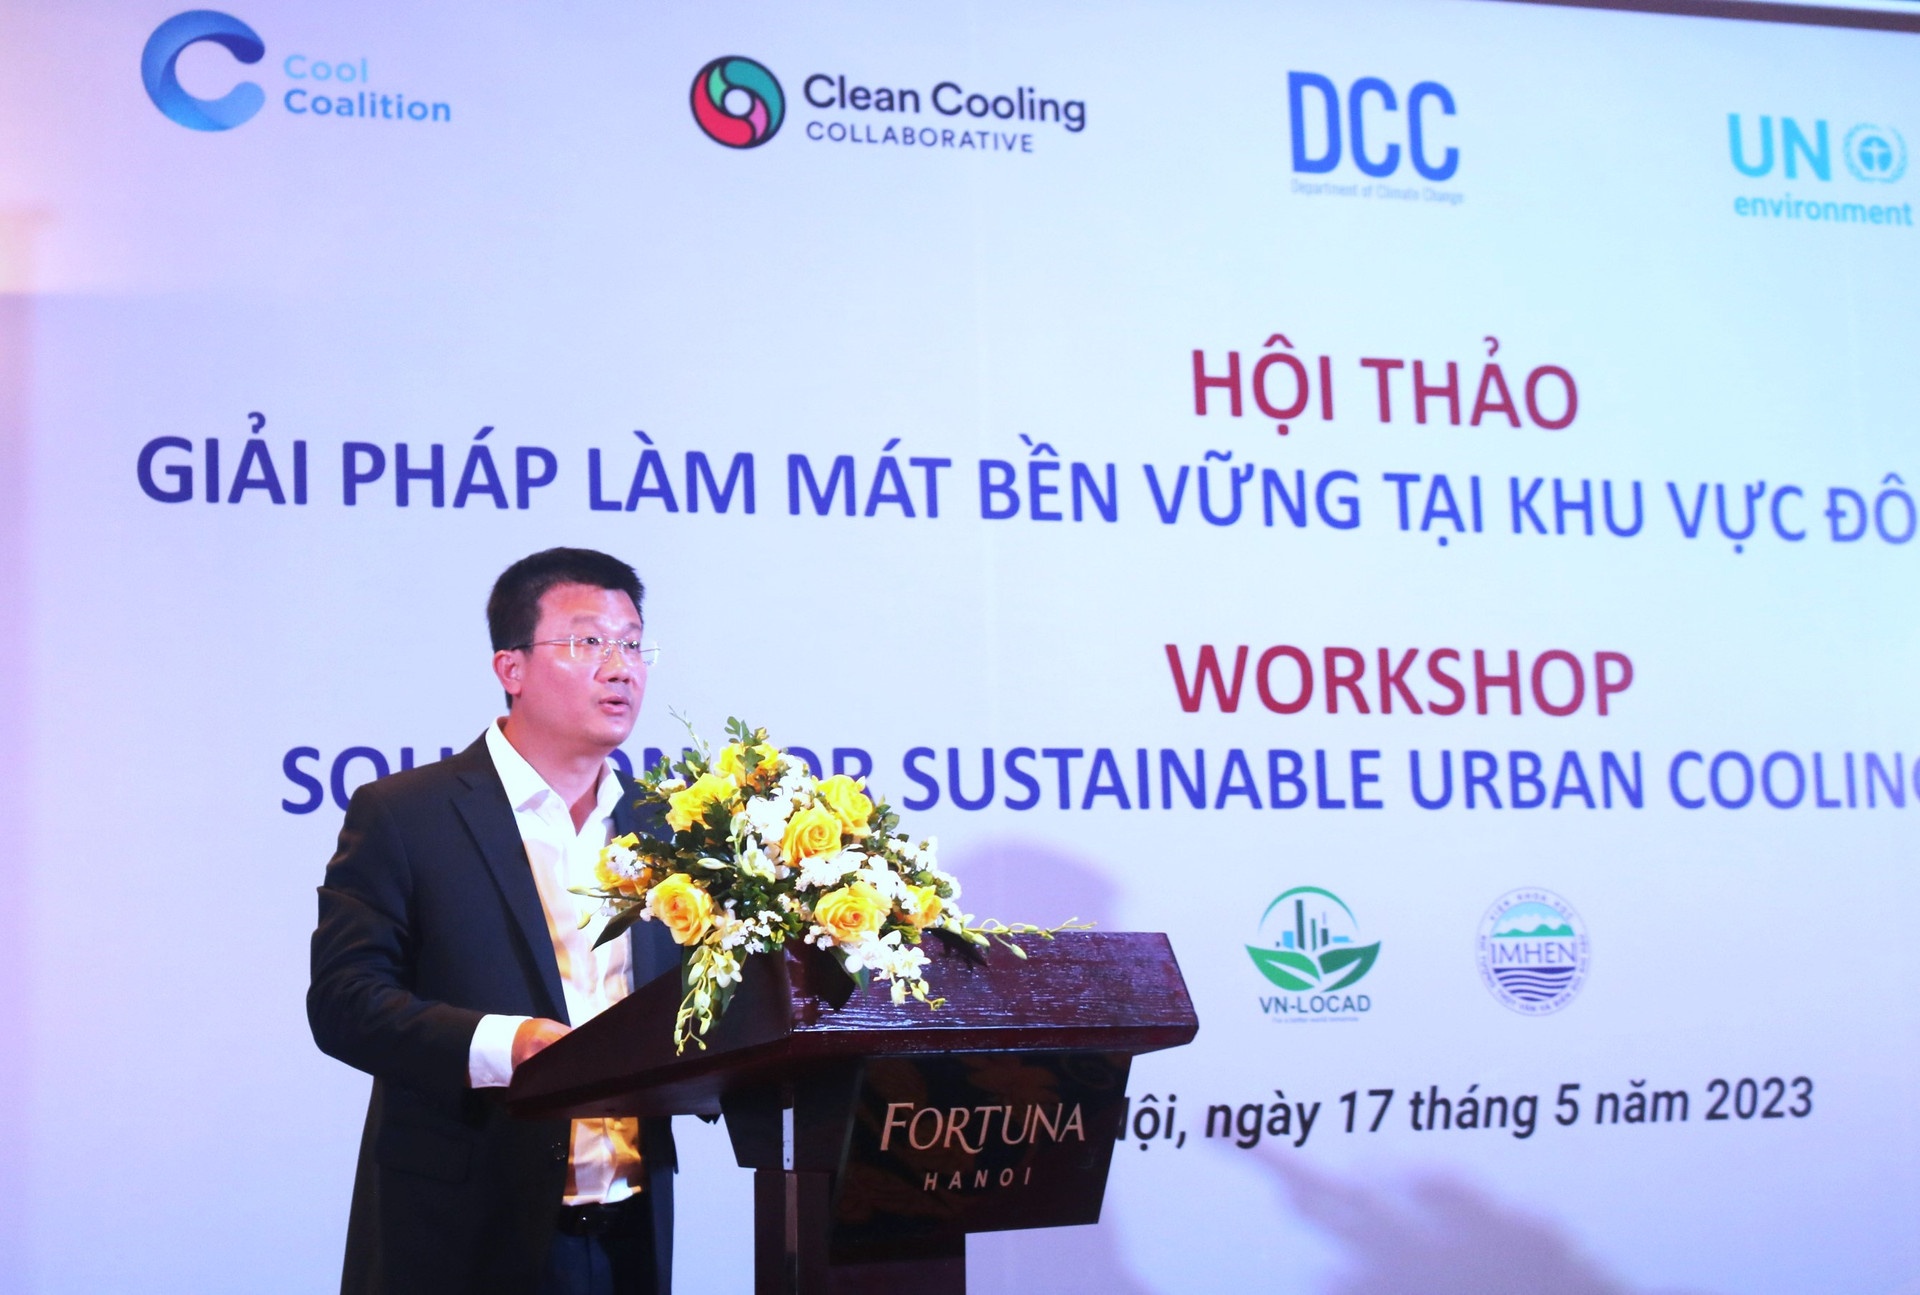 Ông Nguyễn Tuấn Quang, Phó Cục trưởng Cục Biến đổi khí hậu phát biểu tại Hội thảo